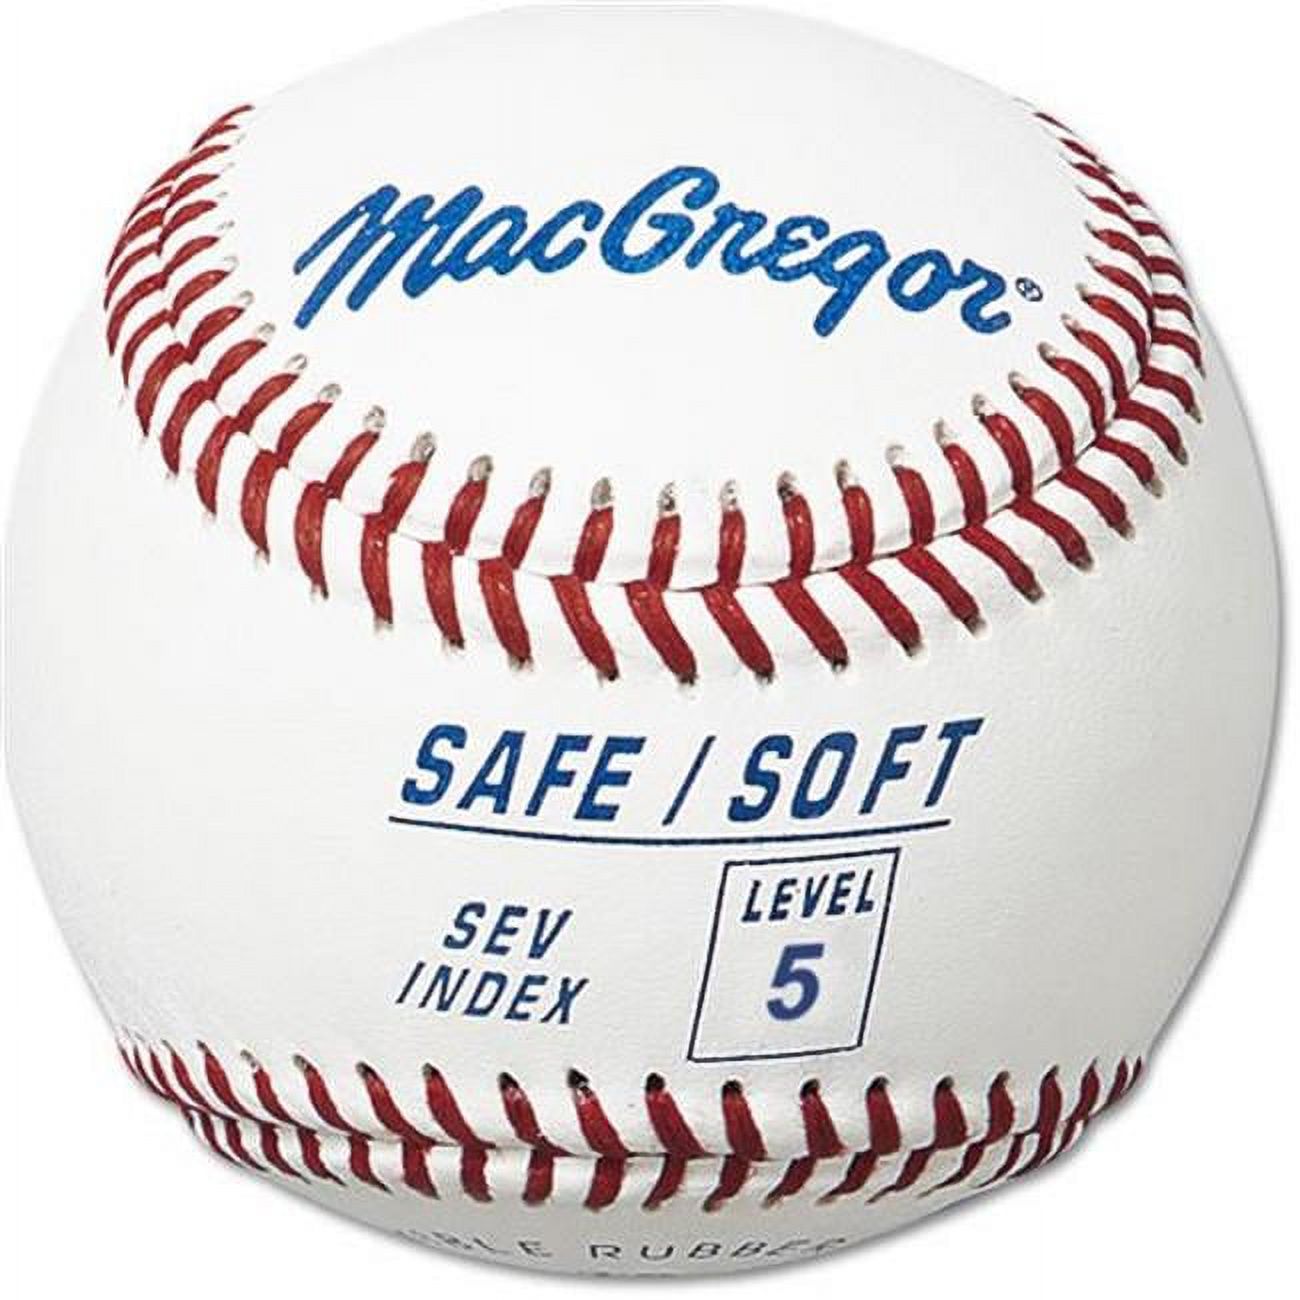 (12 Pack) MacGregor Safe/Soft Level 5 Baseballs, Ages 8-12 - image 1 of 2